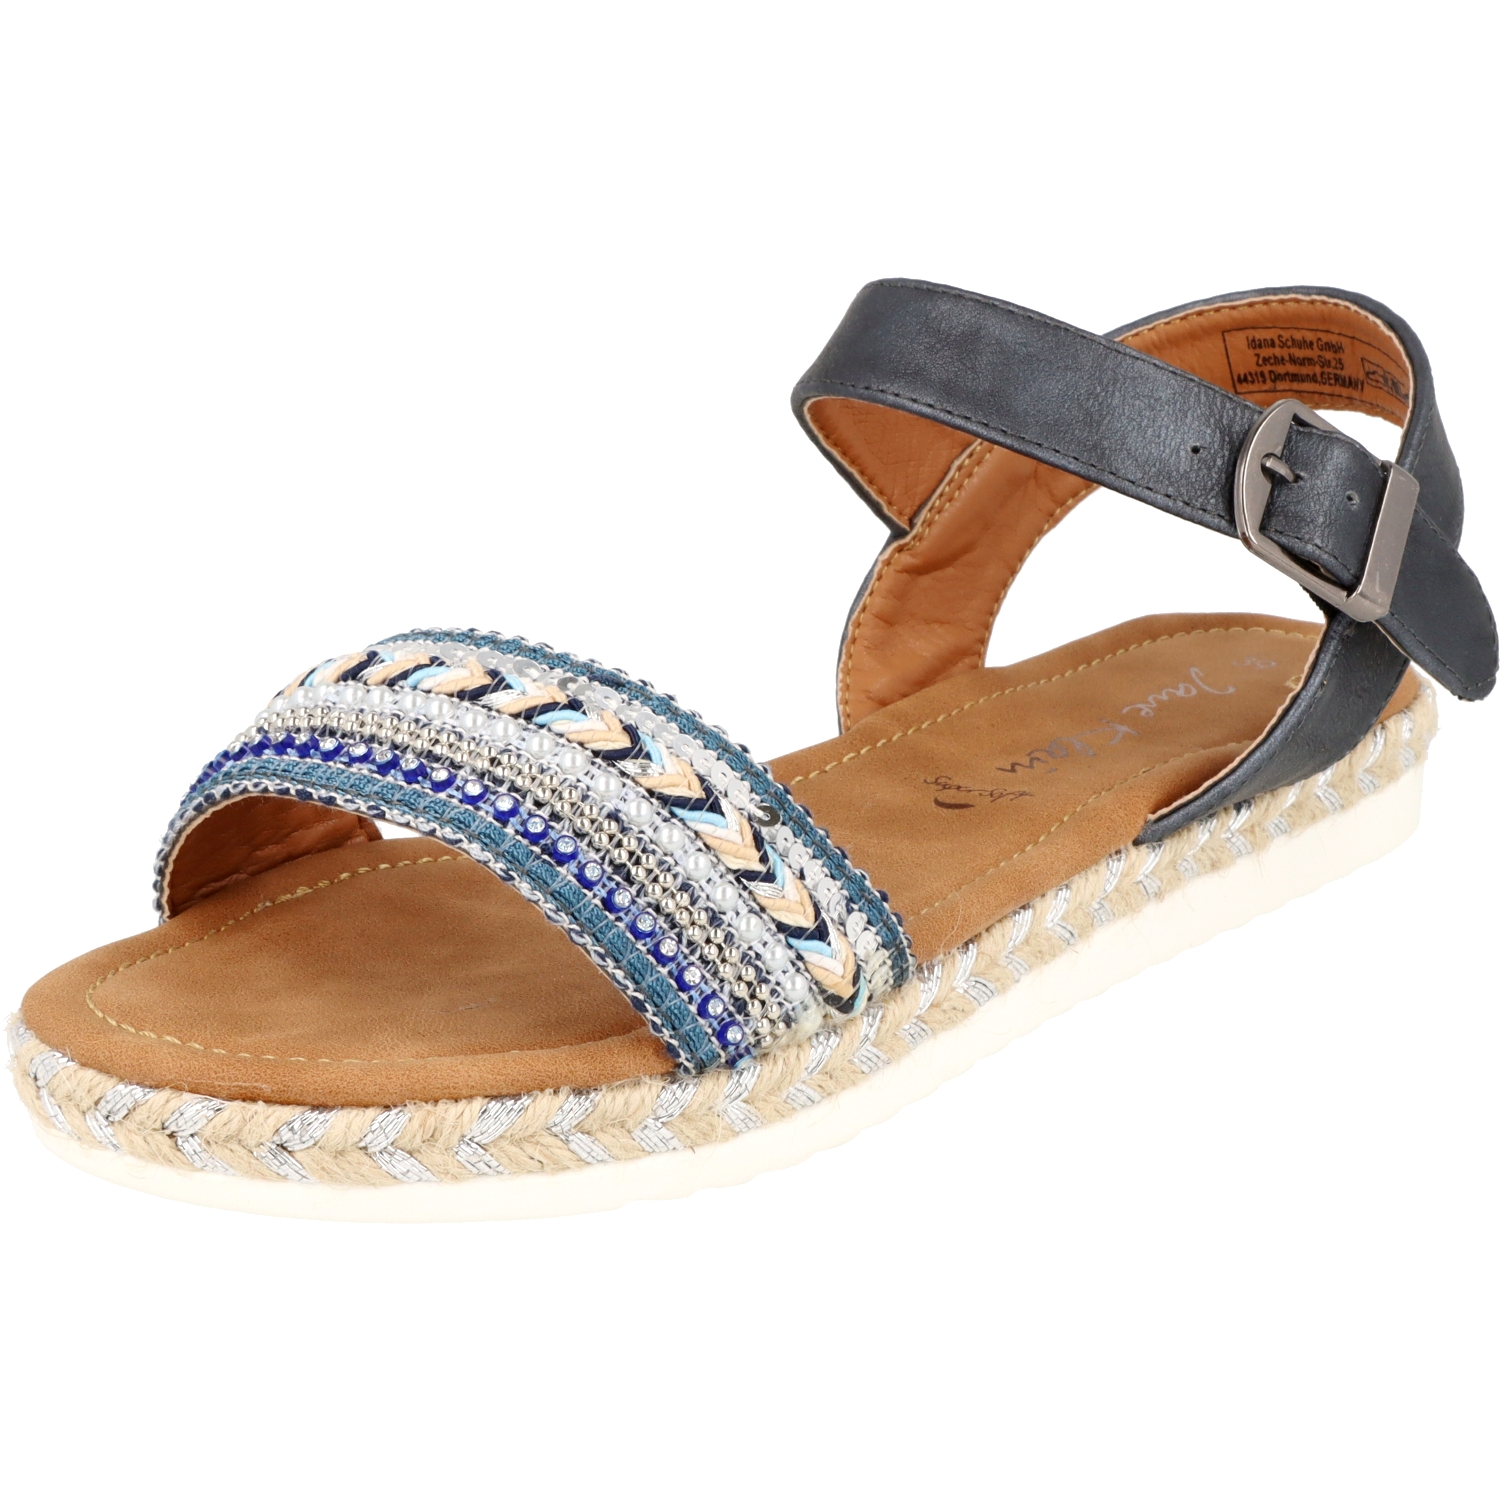 Jane Klain 281-411 Damen Sommer Schuhe Sandale mit Glitzersteine in Blue